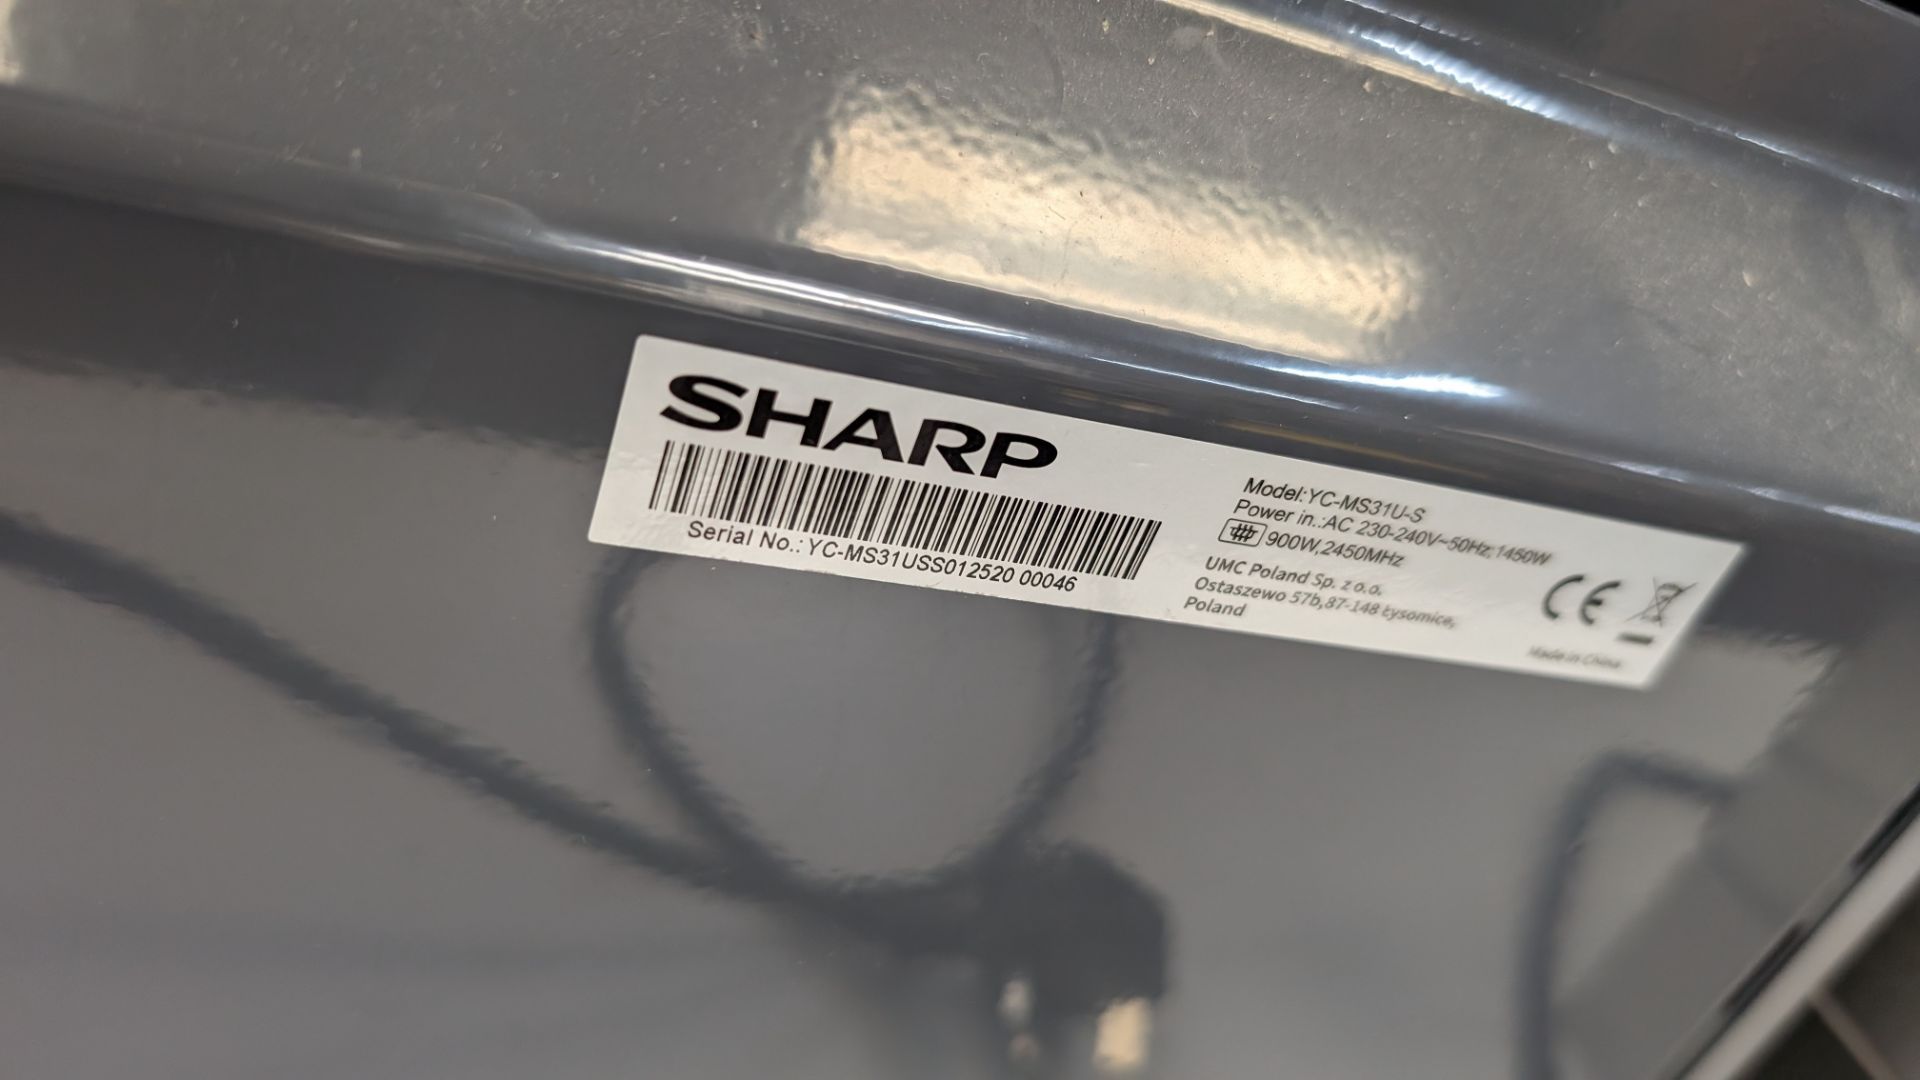 Sharp 900w silver microwave oven - Bild 5 aus 5